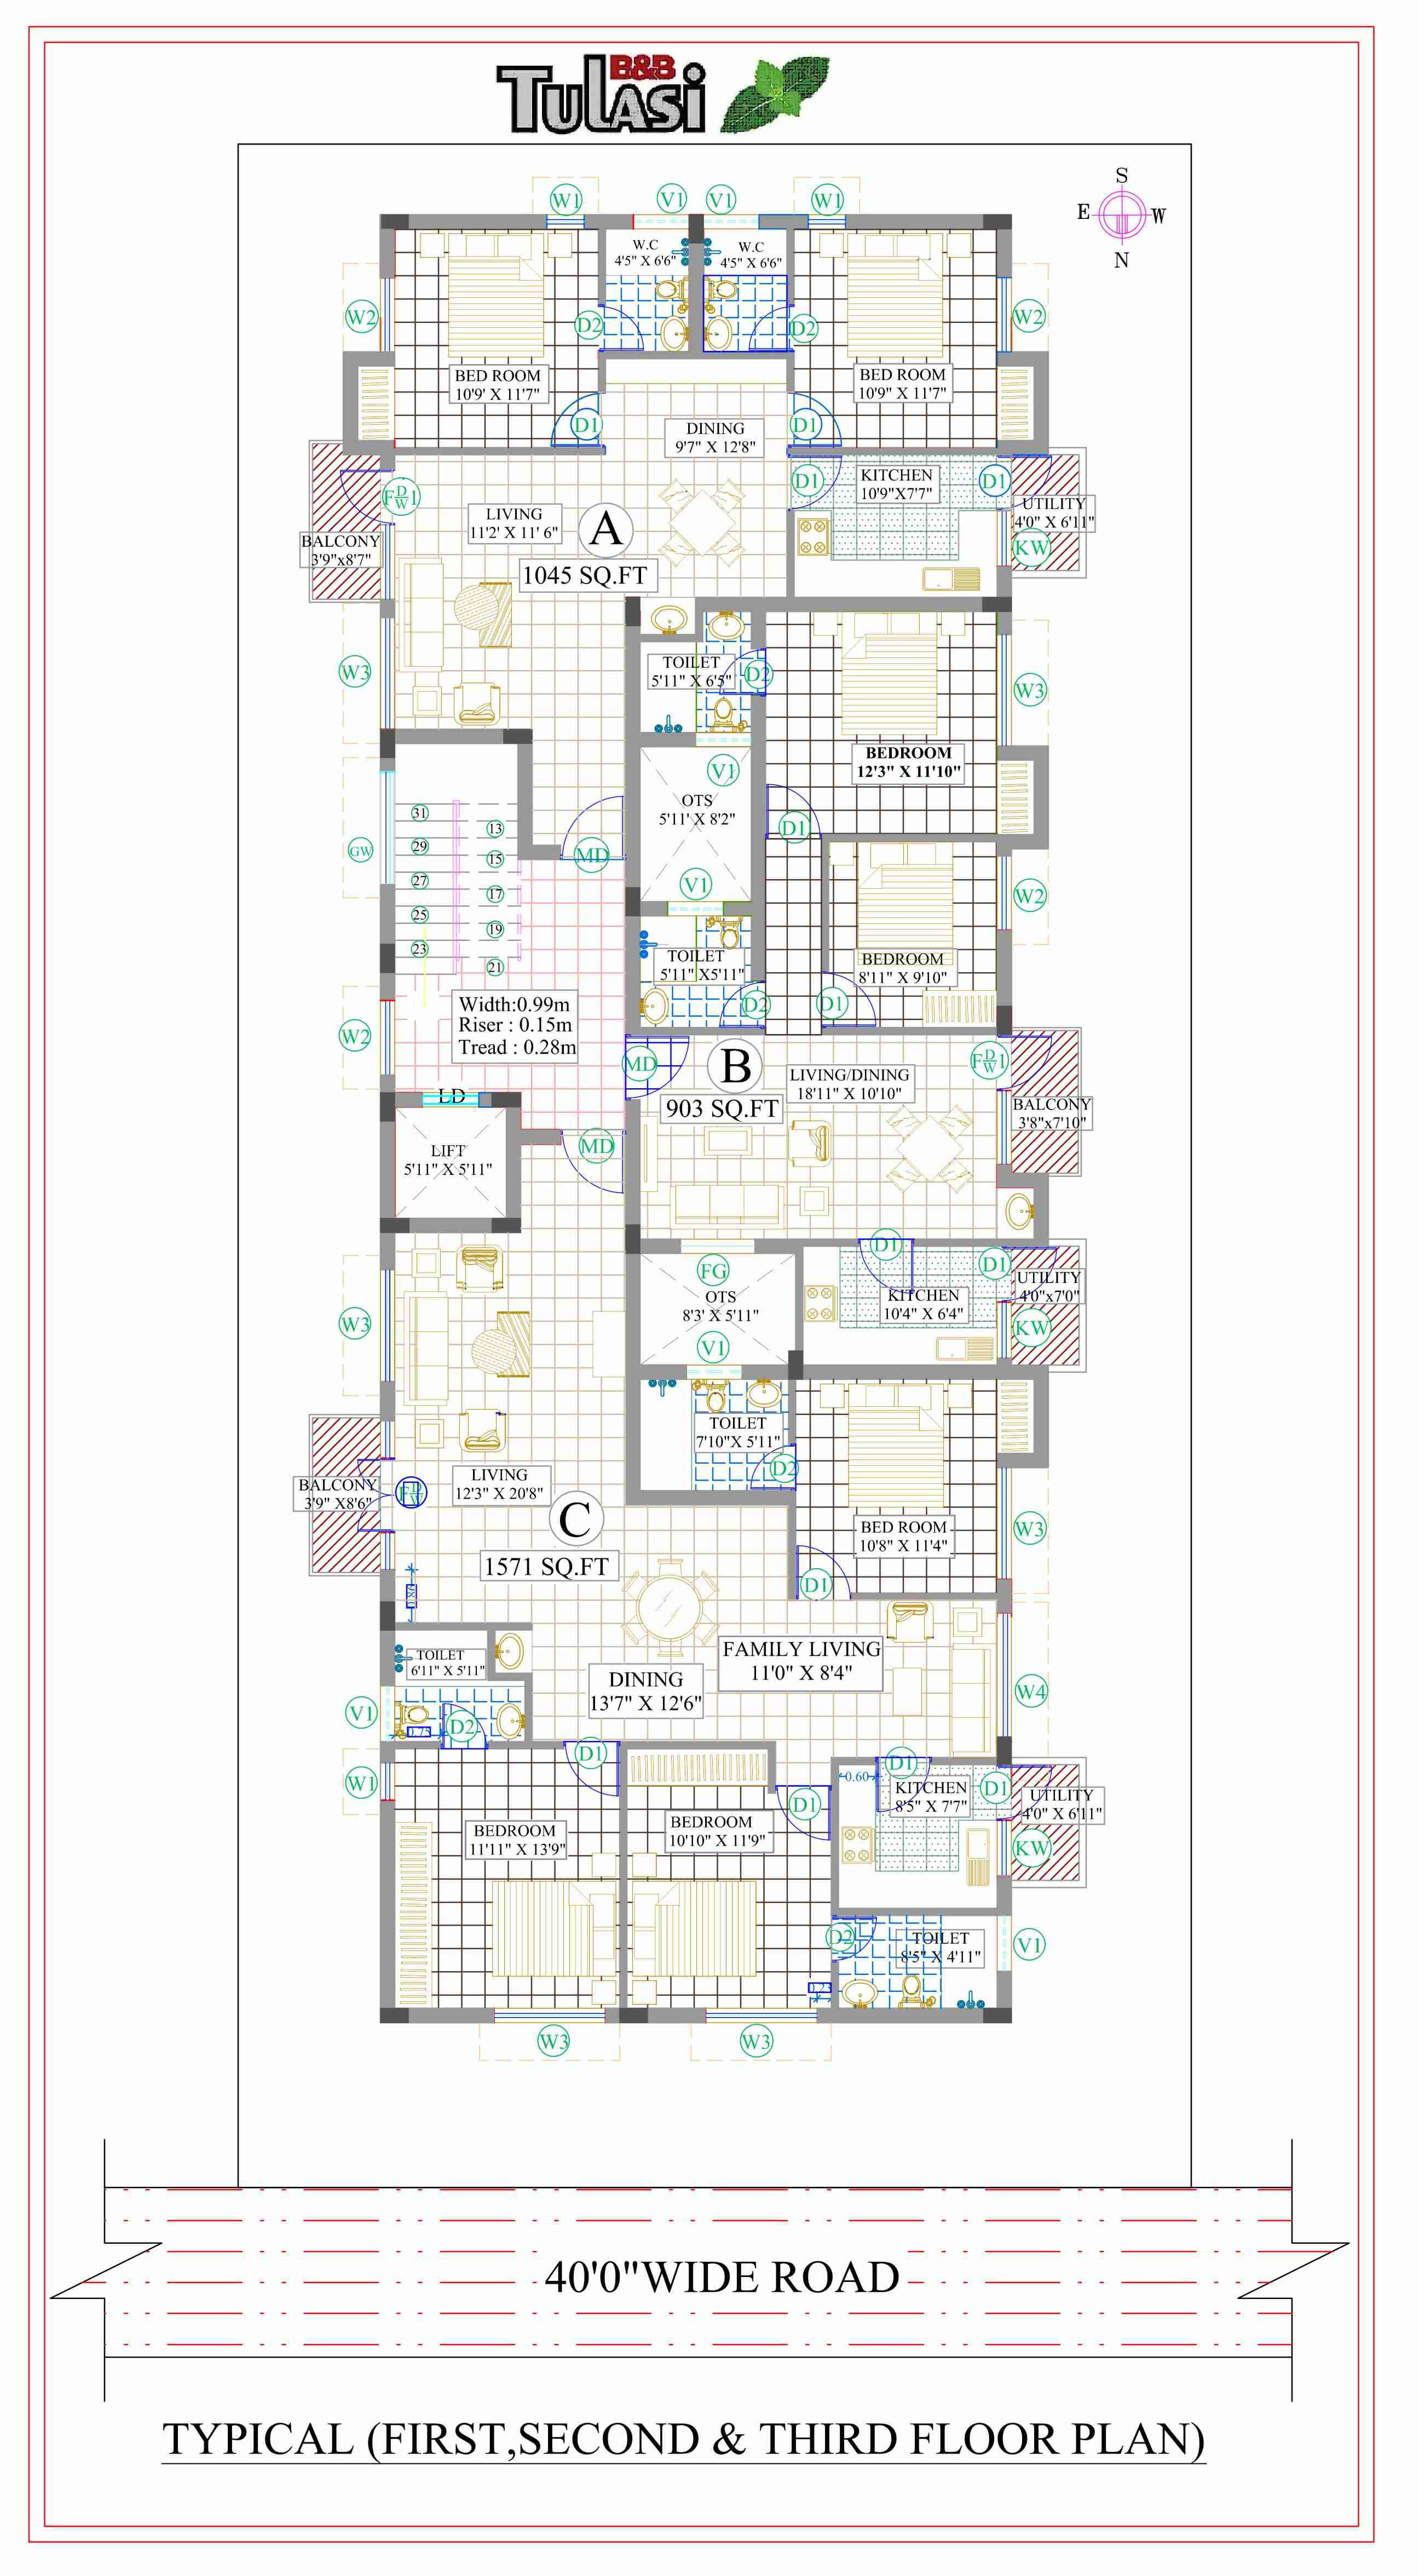 Tulasi floor plan